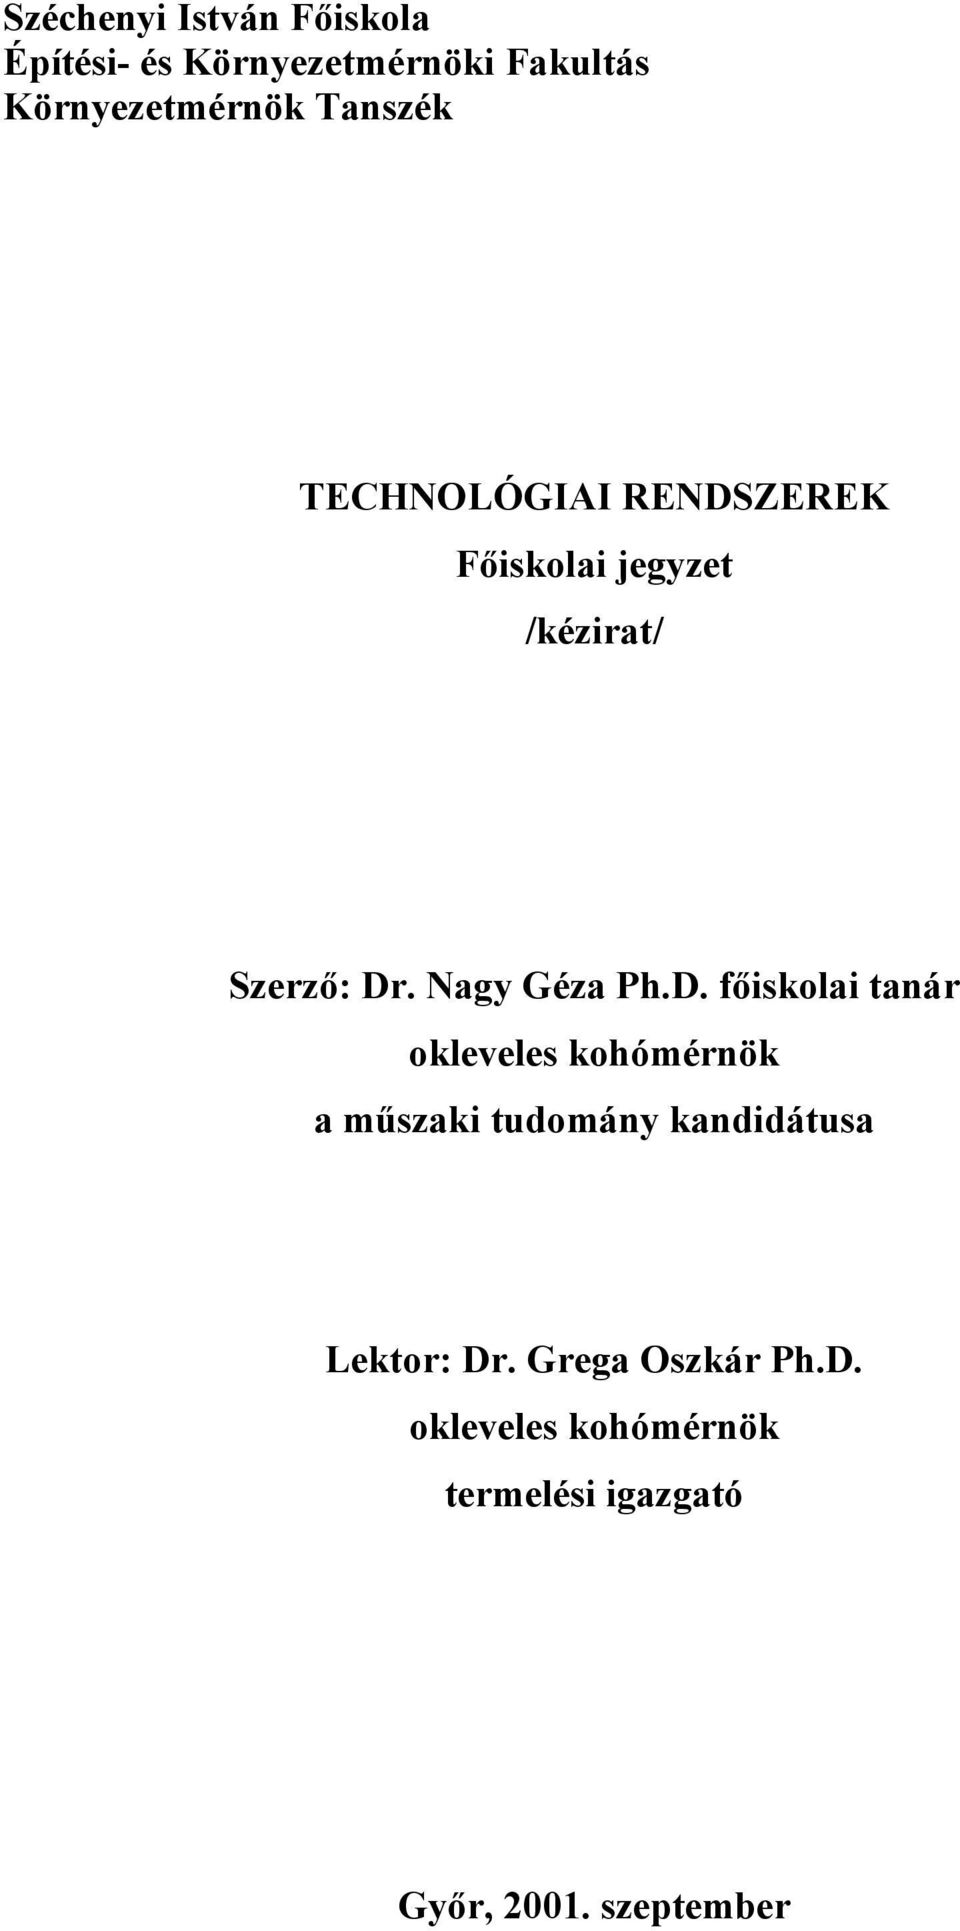 Nagy Géza Ph.D.